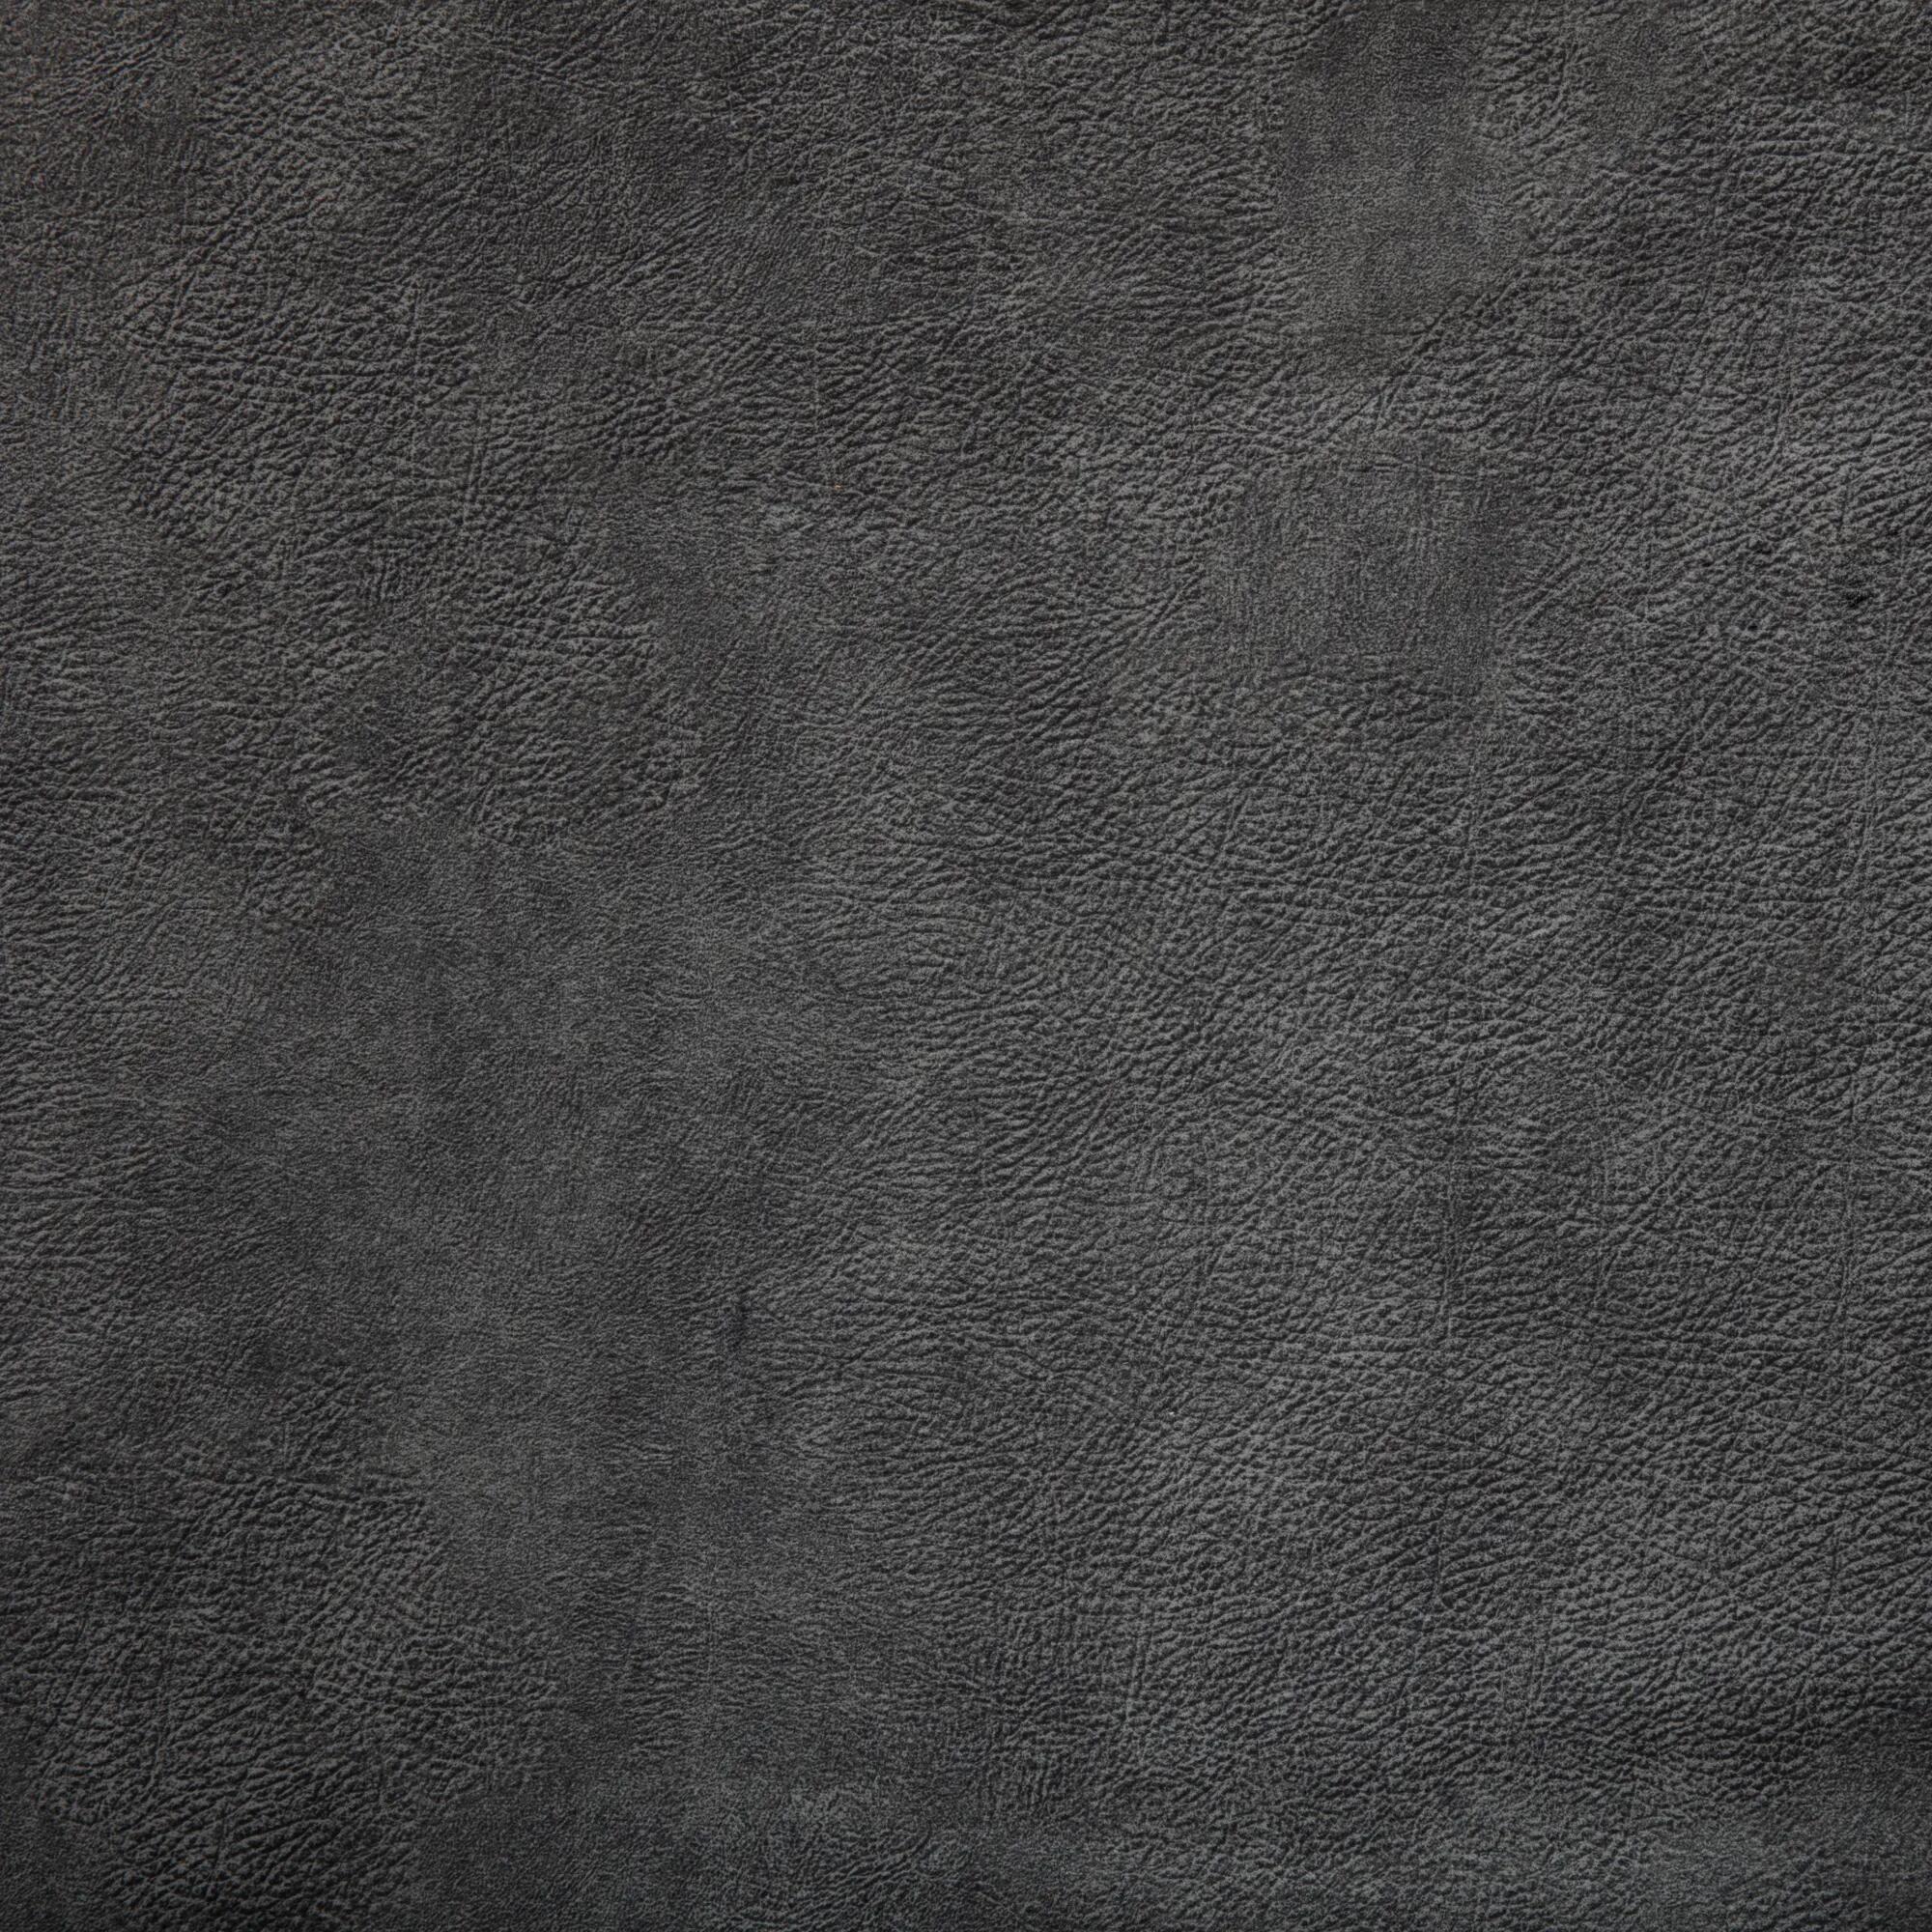 Tela al corte tapicería imitación piel vison negro ancho 140 cm